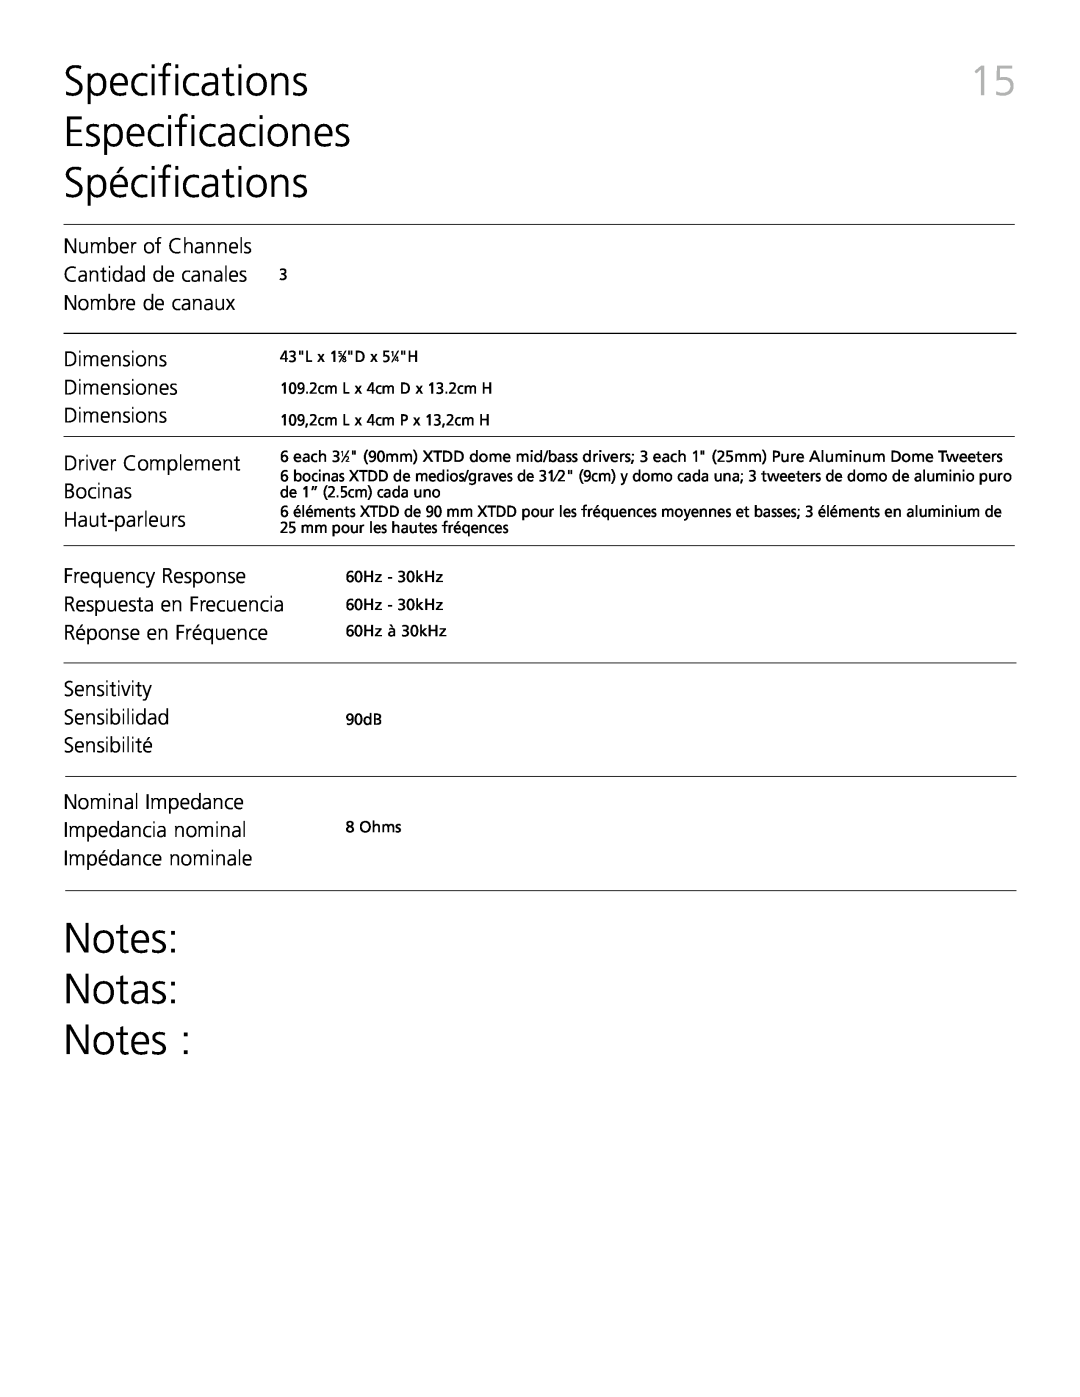 Definitive Technology XTR-SSA3 Specifications, Especificaciones Spécifications, Notes Notas Notes, Nombre de canaux 